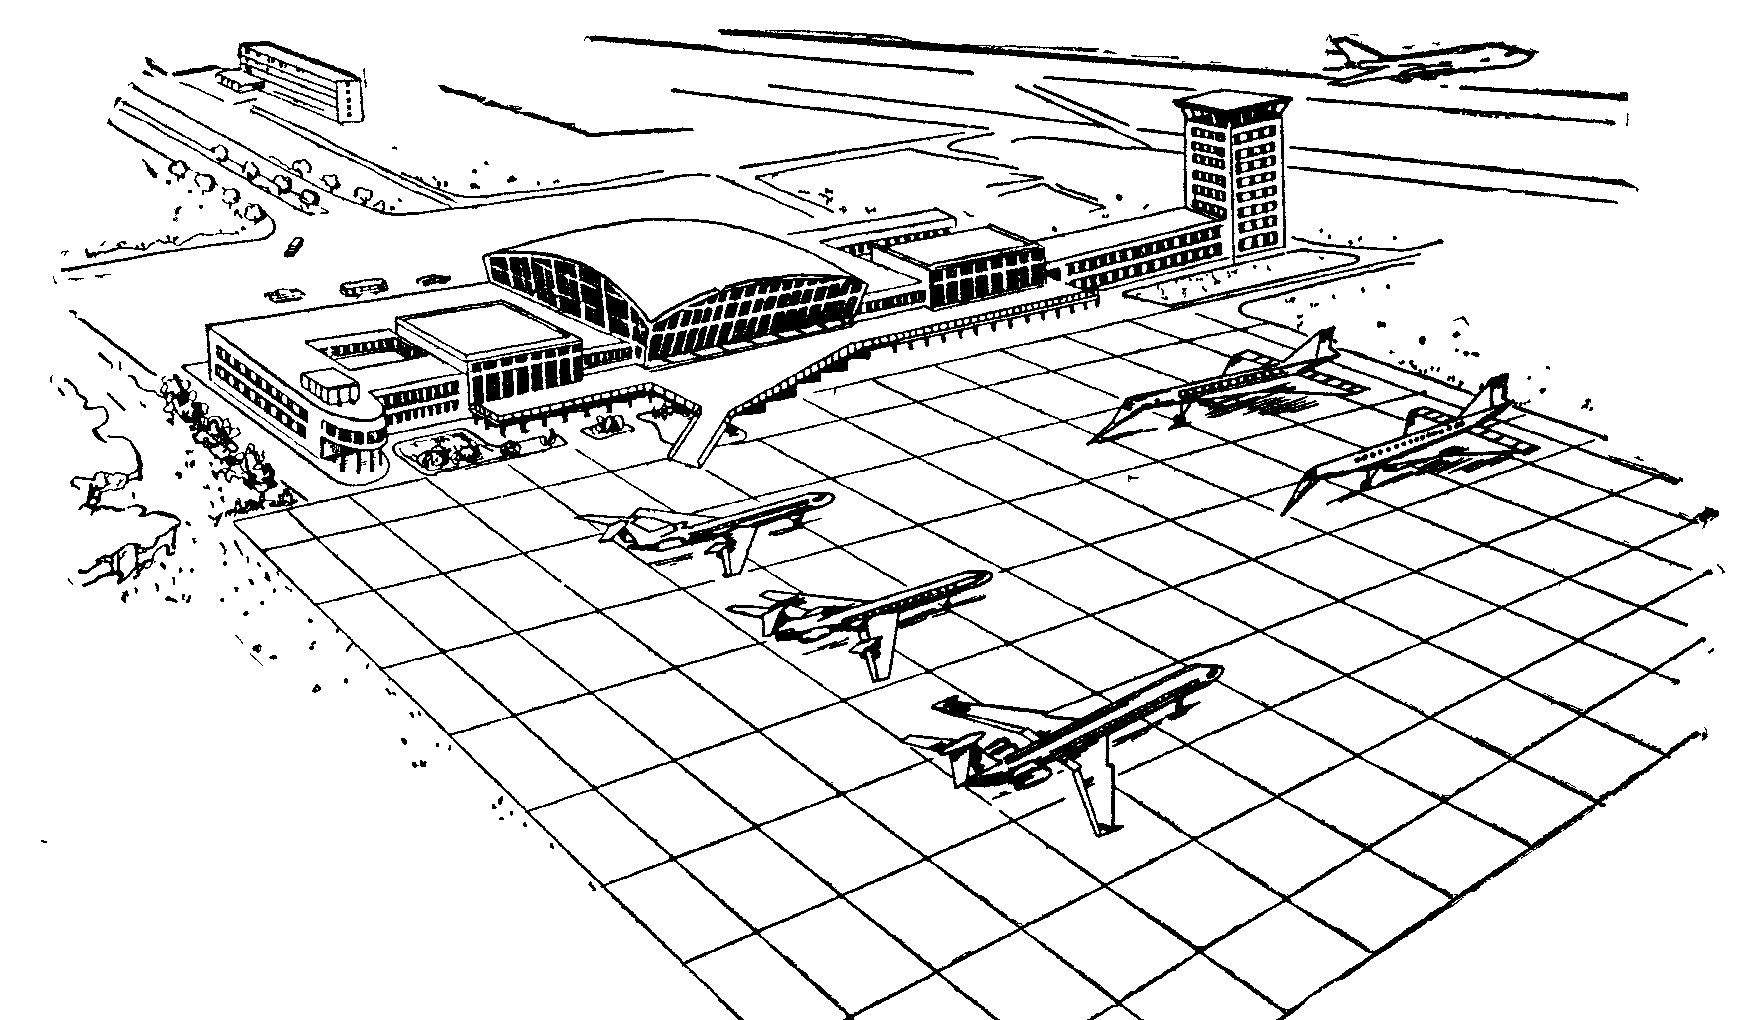 аэропорт рисунок